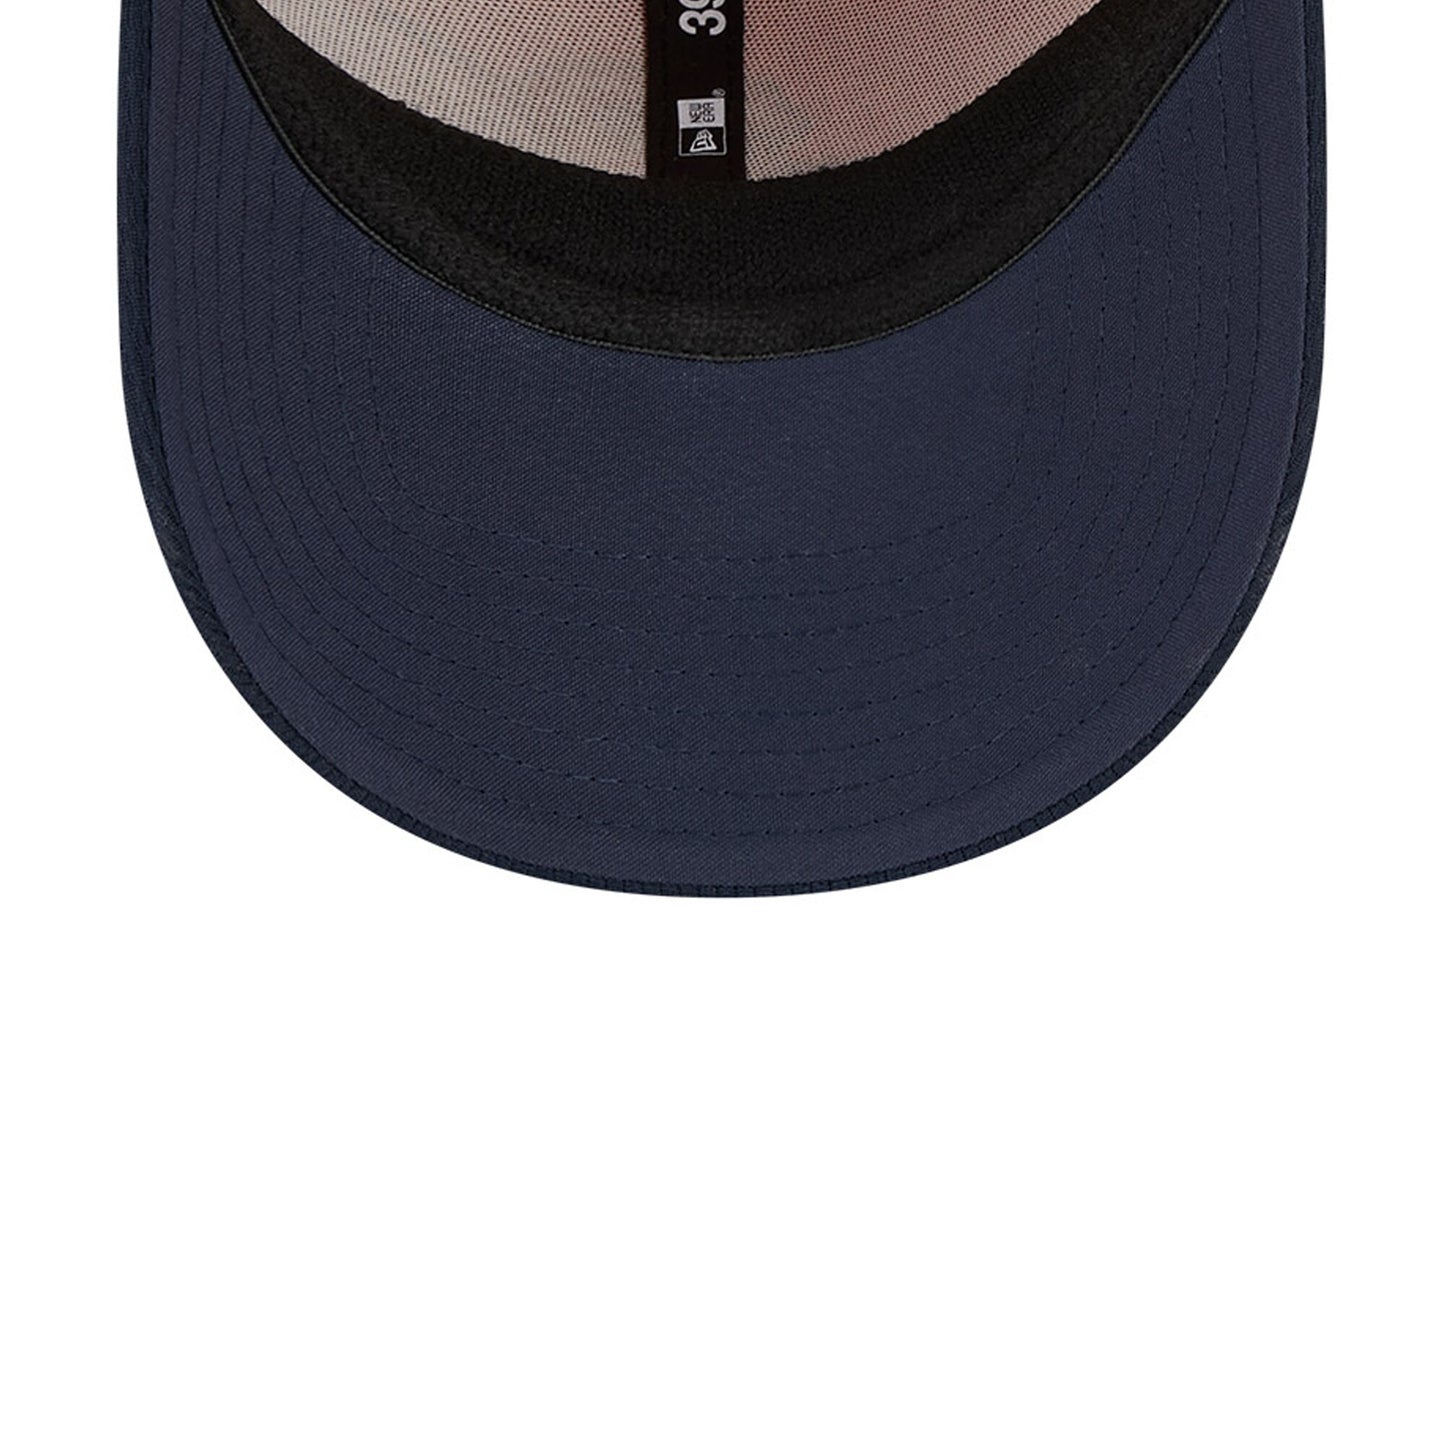 Men's Chicago Bears Primary Logo New Era Orange/Navy 2023 Sideline 39THIRTY Flex Hat